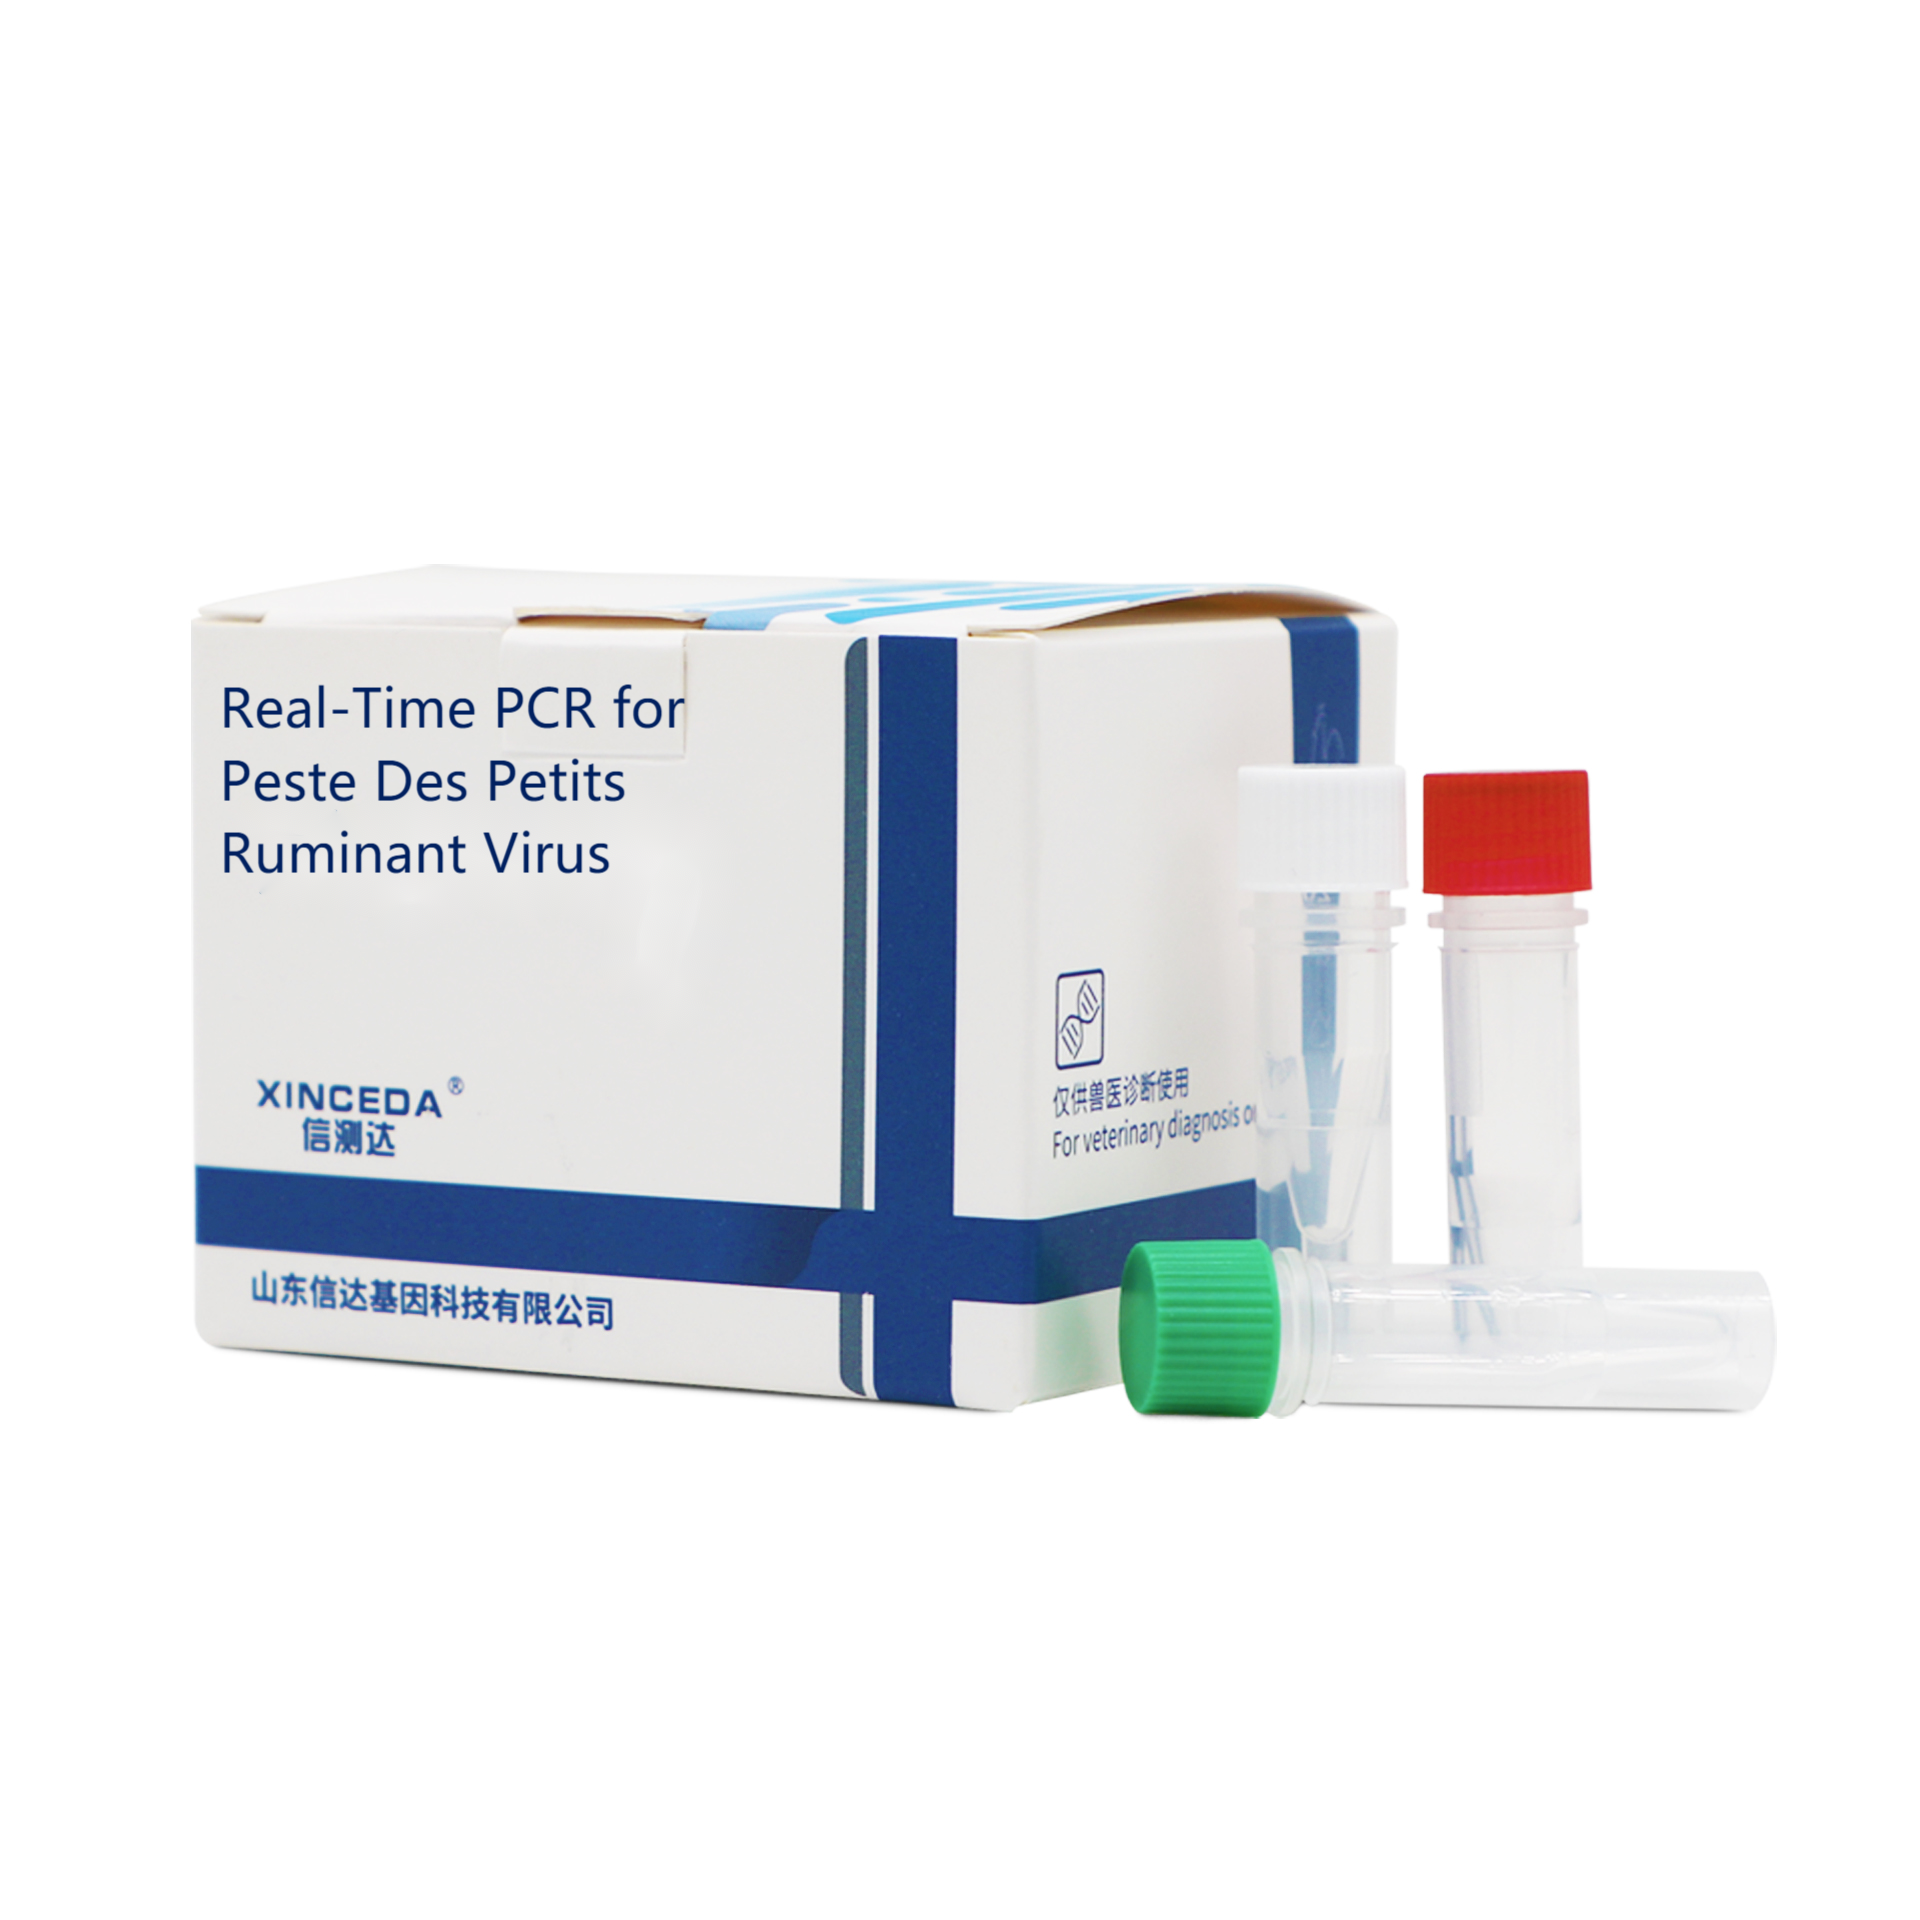 PCR Detection of Swine Hemorrhagic Fever Virus (SHFV)